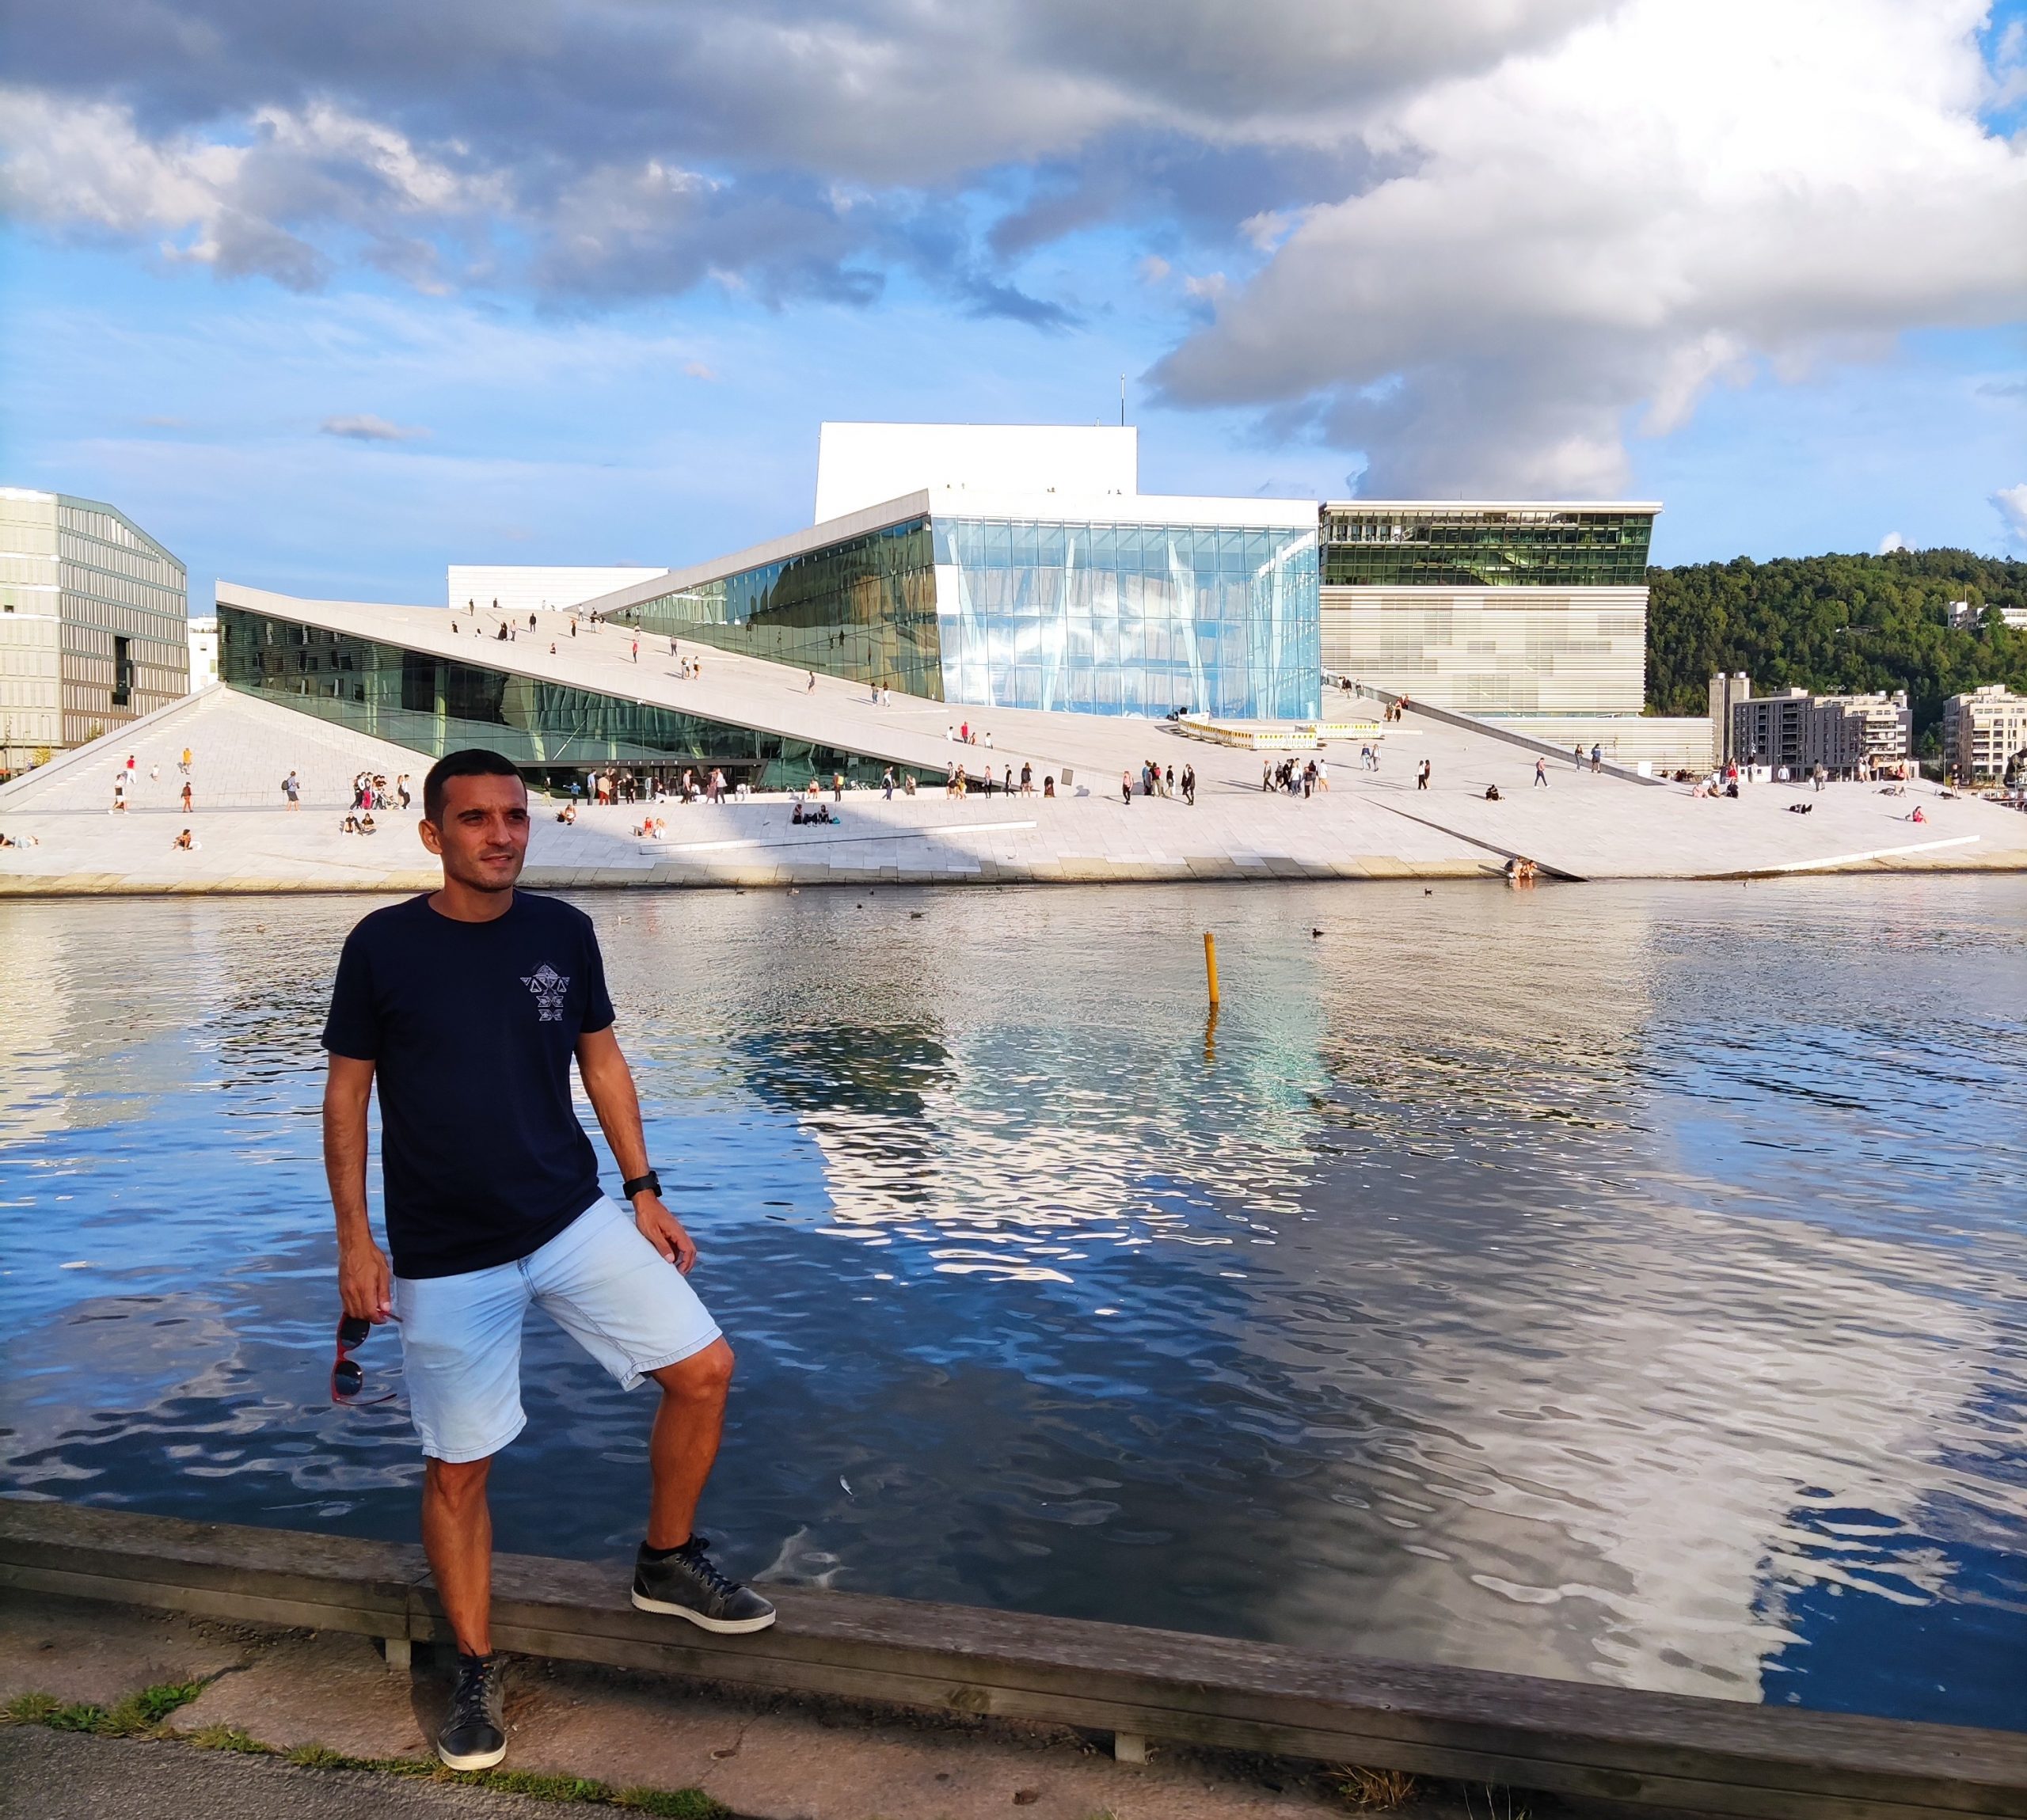 La Ópera de Oslo - Qué ver en Oslo